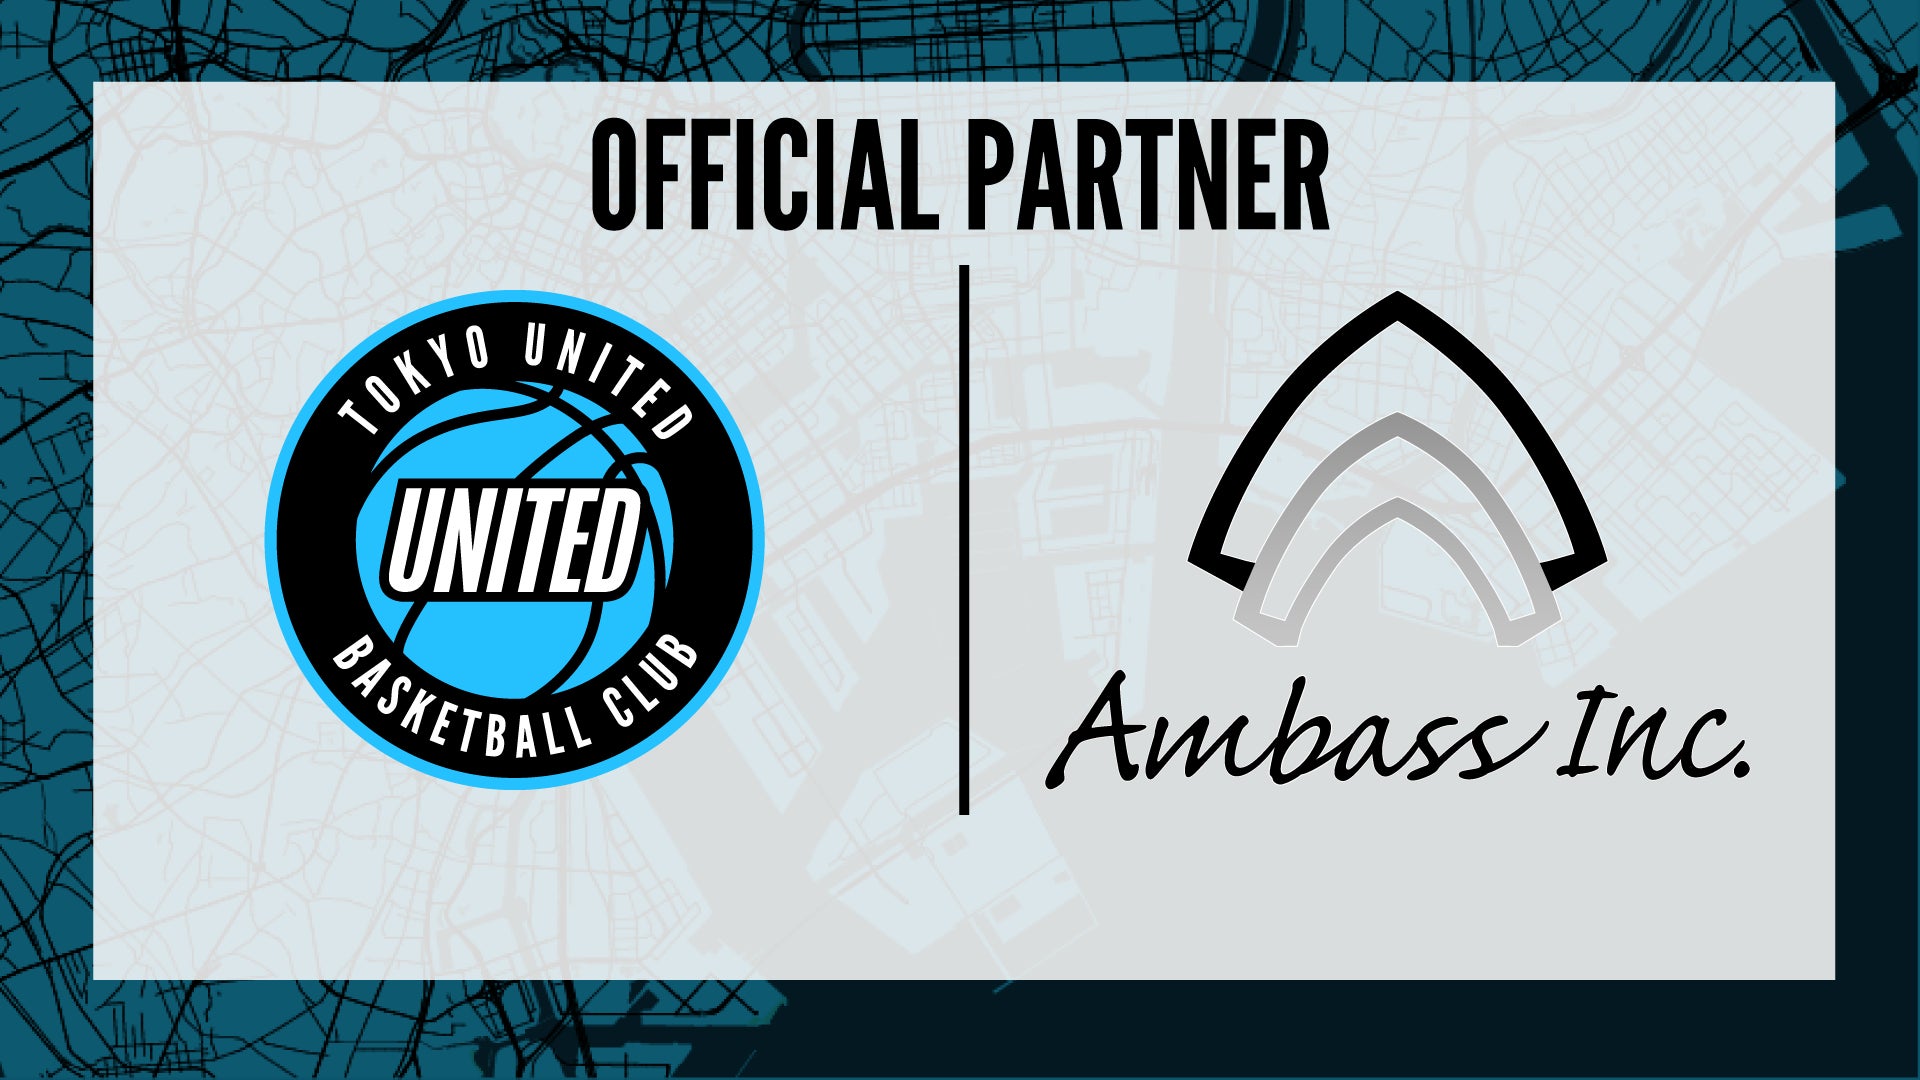 東京ユナイテッドバスケットボールクラブが『アンバス株式会社』とのオフィシャルパートナー契約を締結